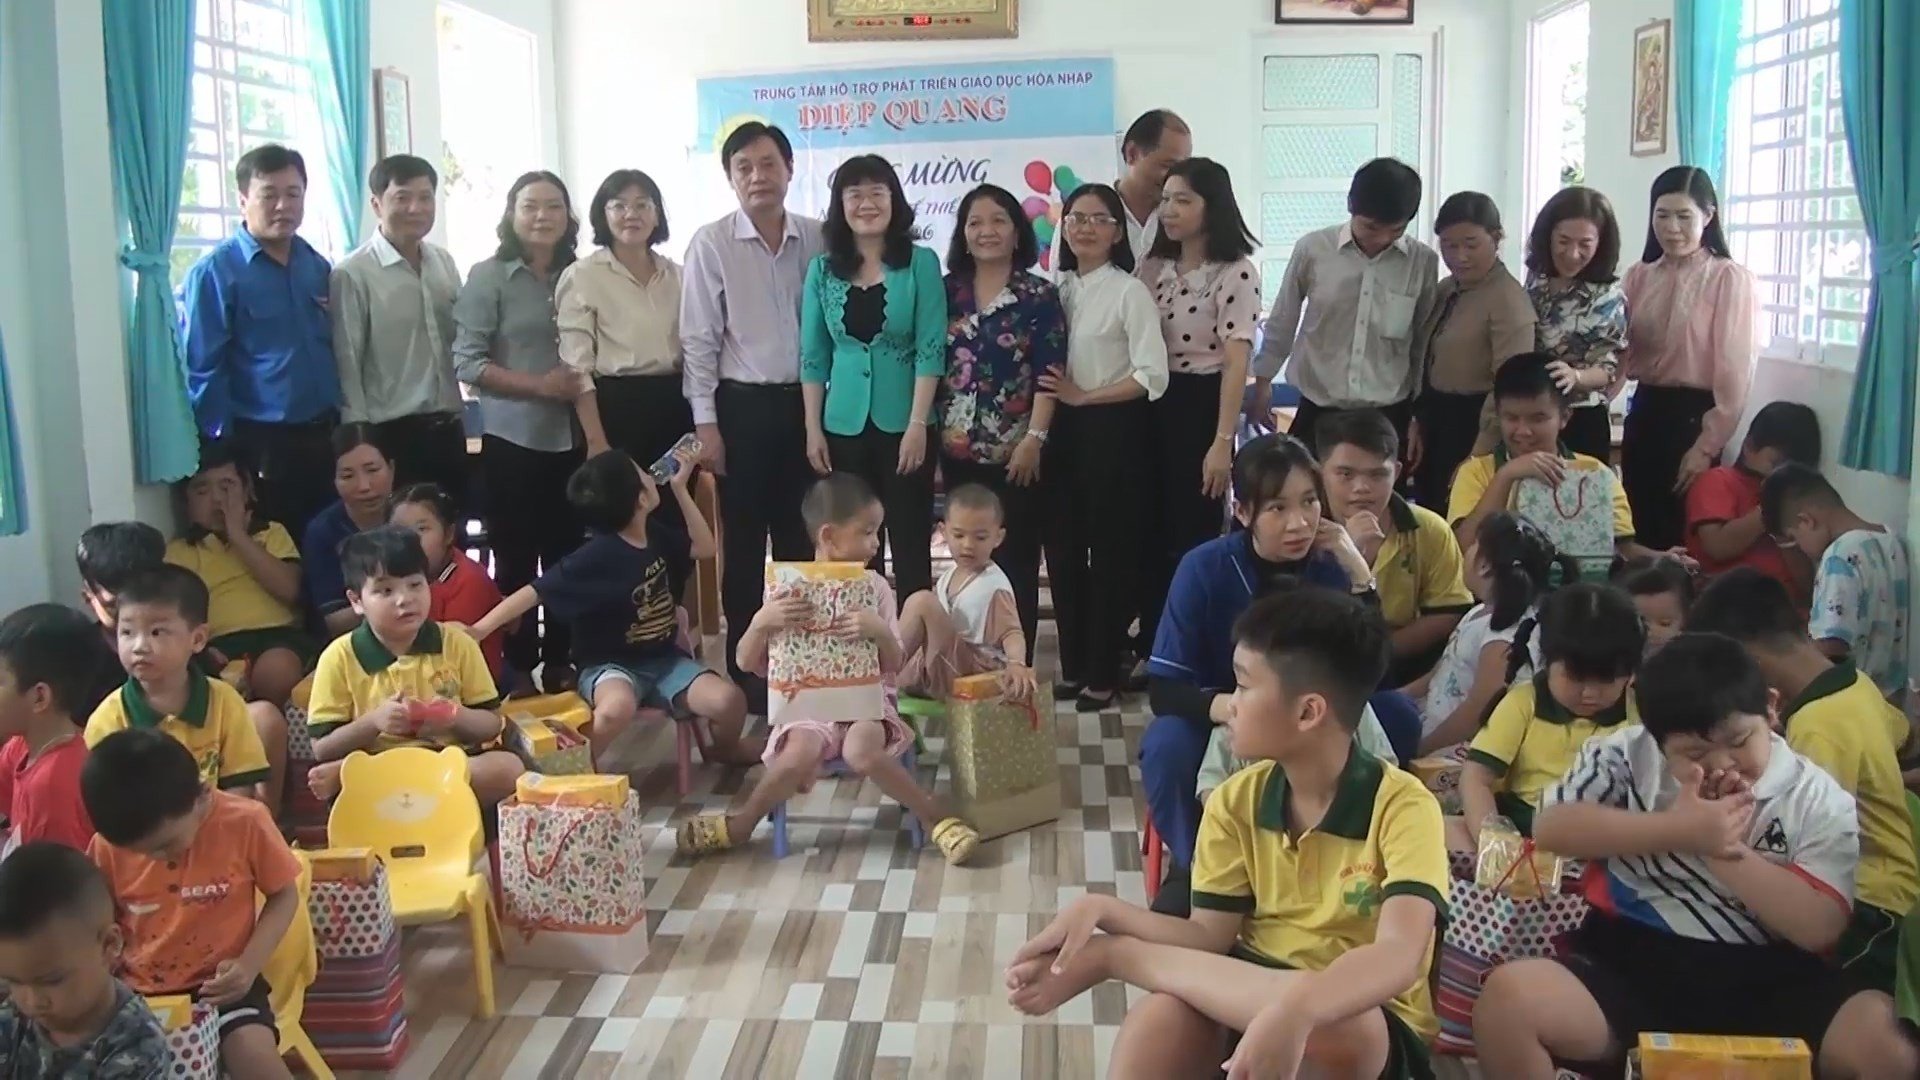 Tặng quà cho trẻ em có hoàn cảnh đặc biệt tại Cơ sở hỗ trợ phát triển giáo dục hòa nhập Diệp Quang